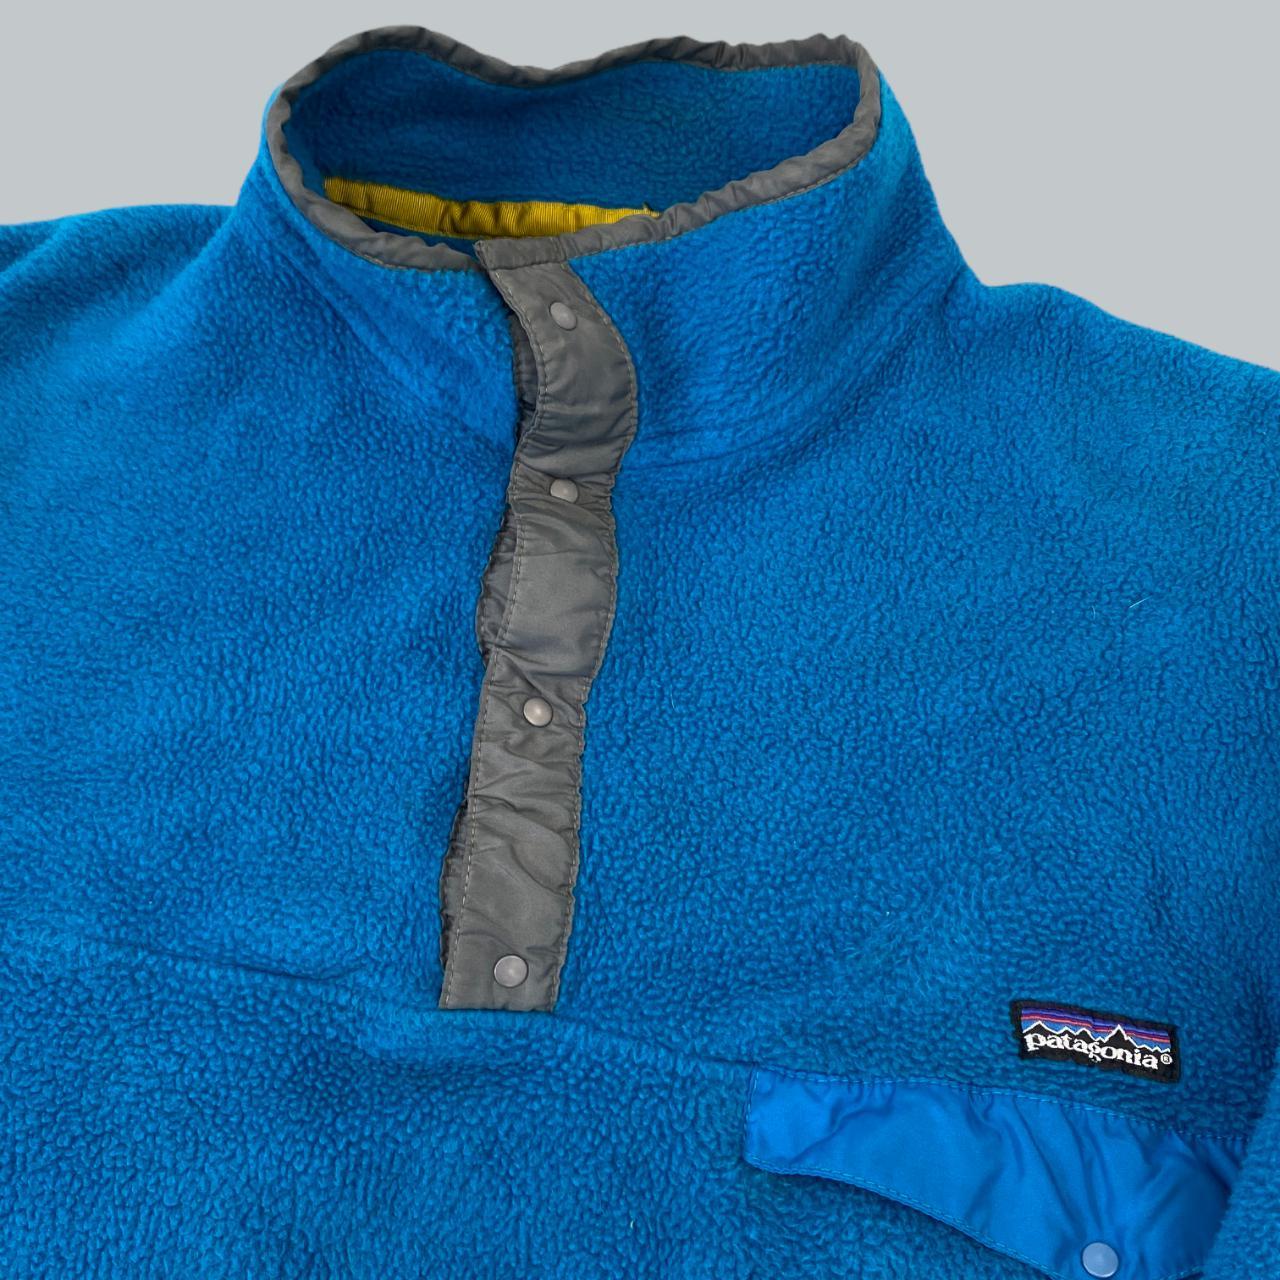 Patagonia Women's Blue Jacket (3)